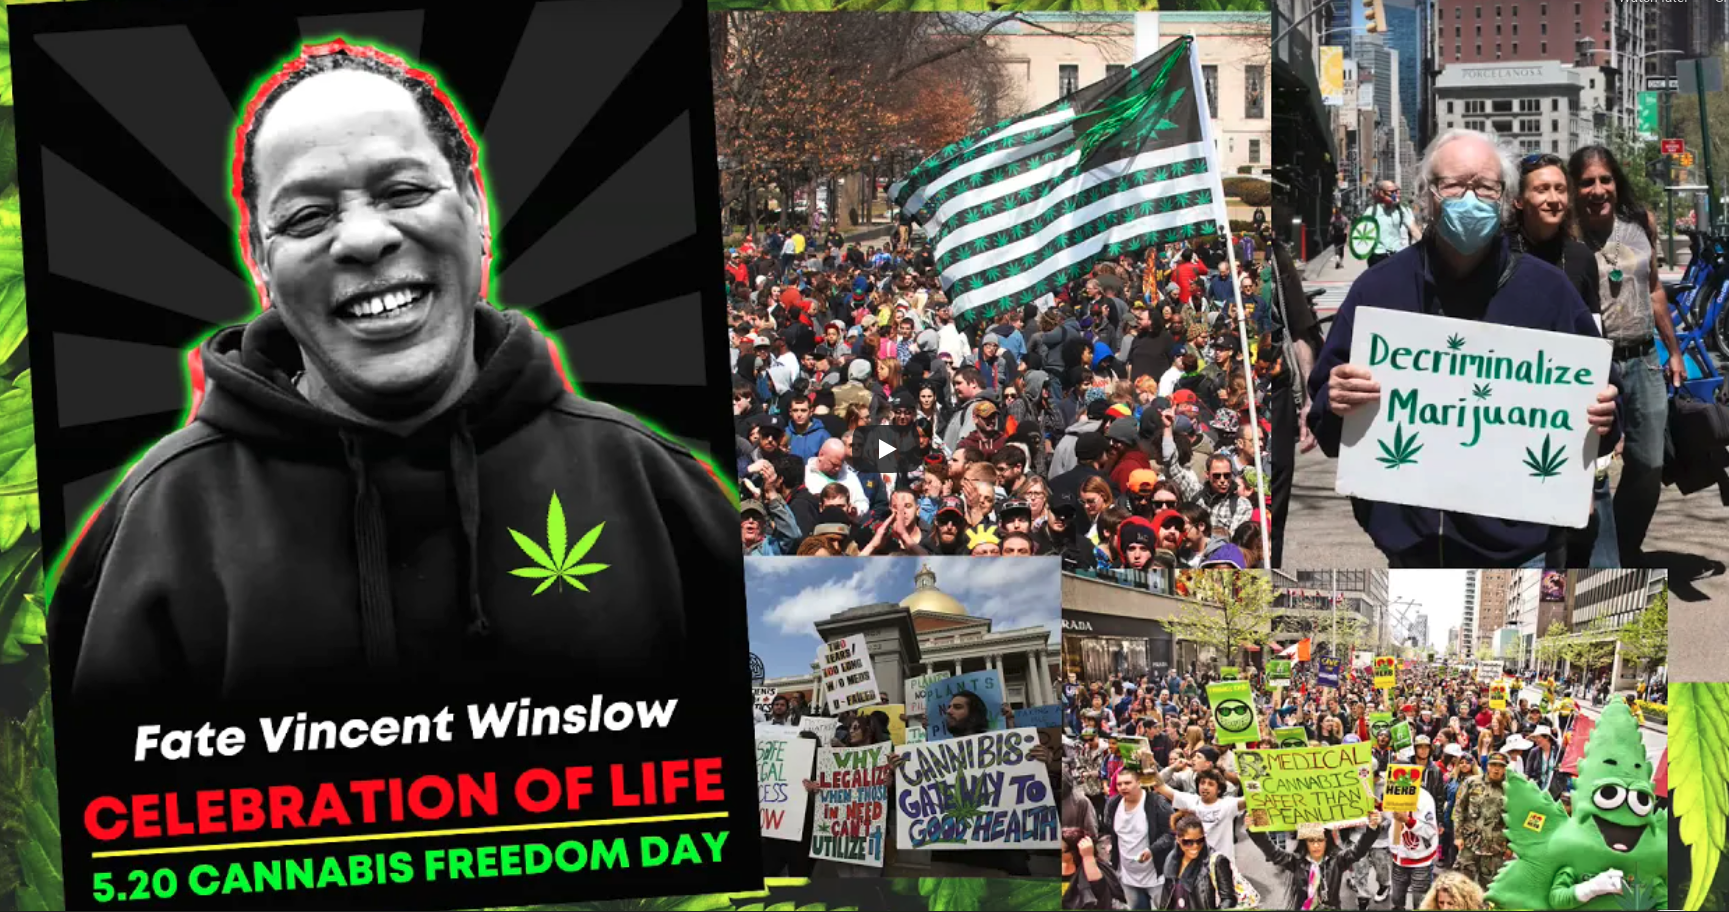 520 cannabis freedom day